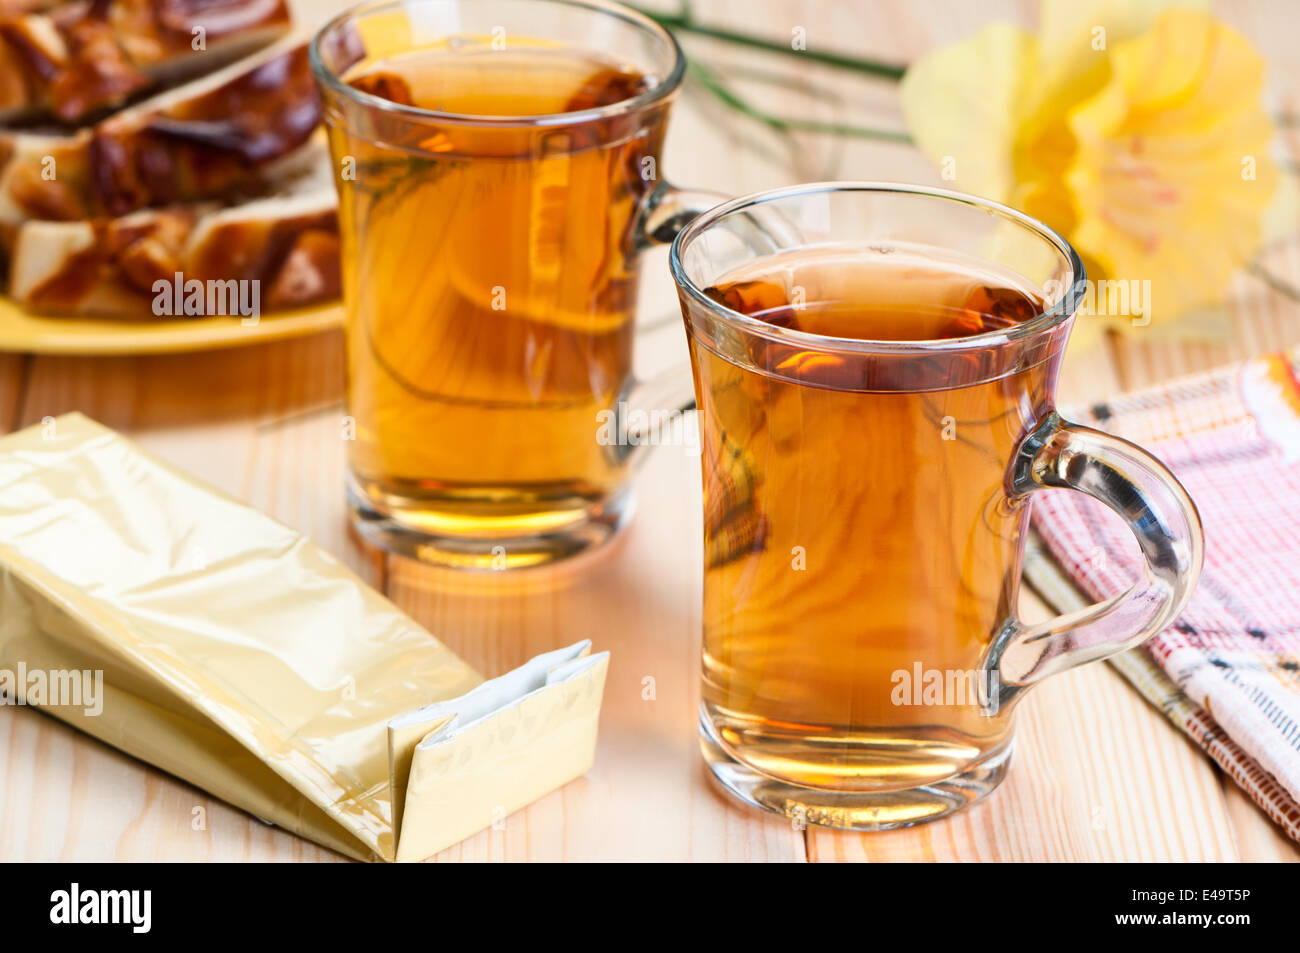 Tea in glass mugs. Stock Photo